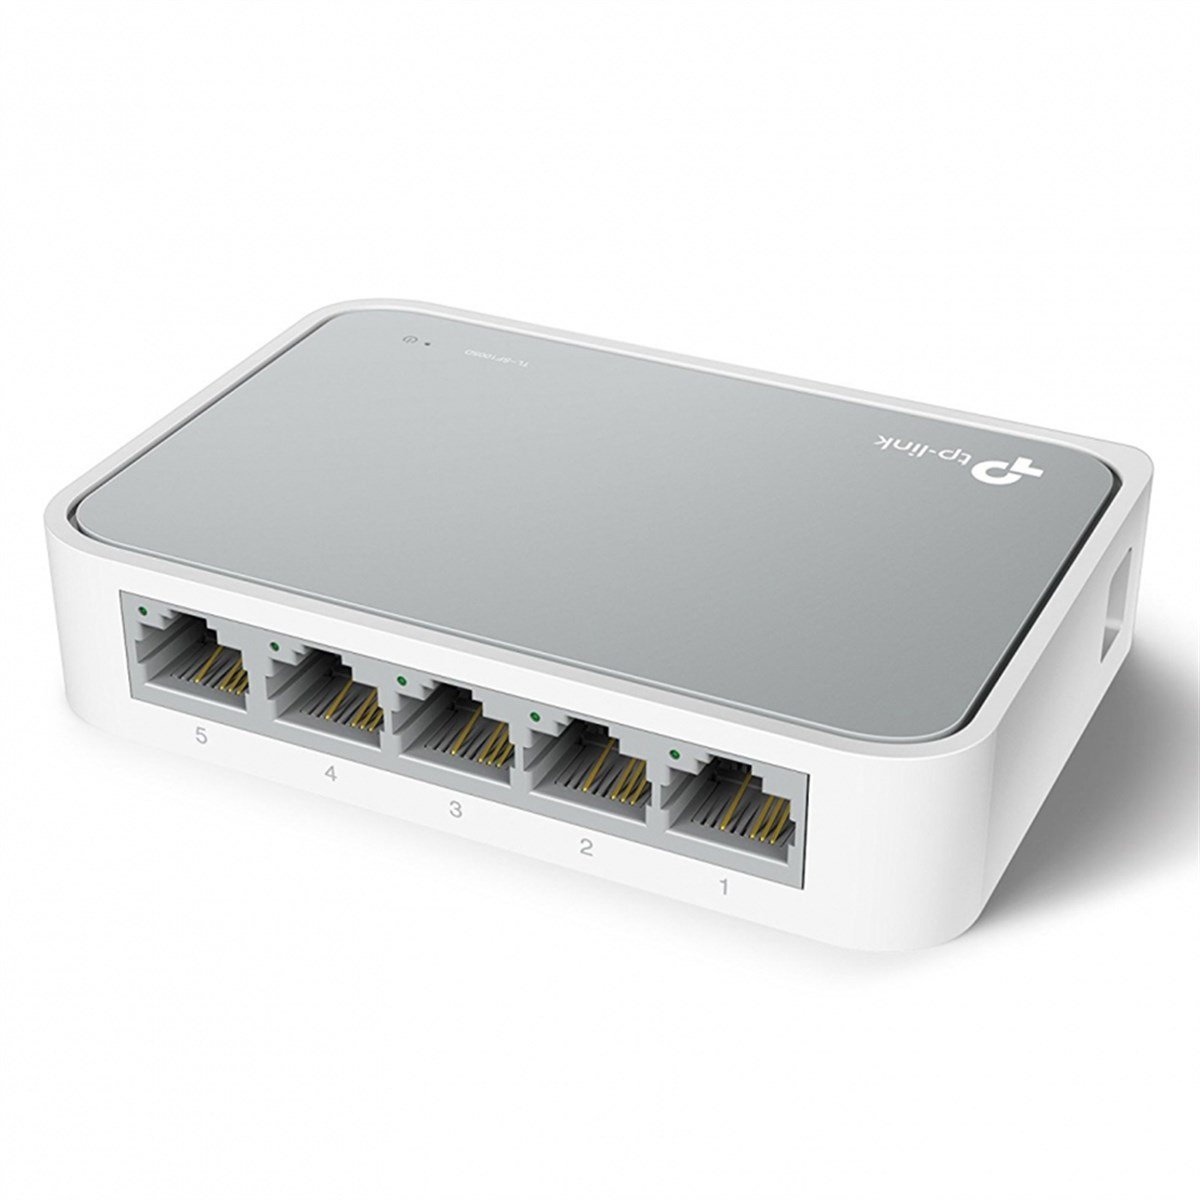 TP-LINK TL-SG1005D 5 Port 10/100/1000 Mbps Gigabit Switch